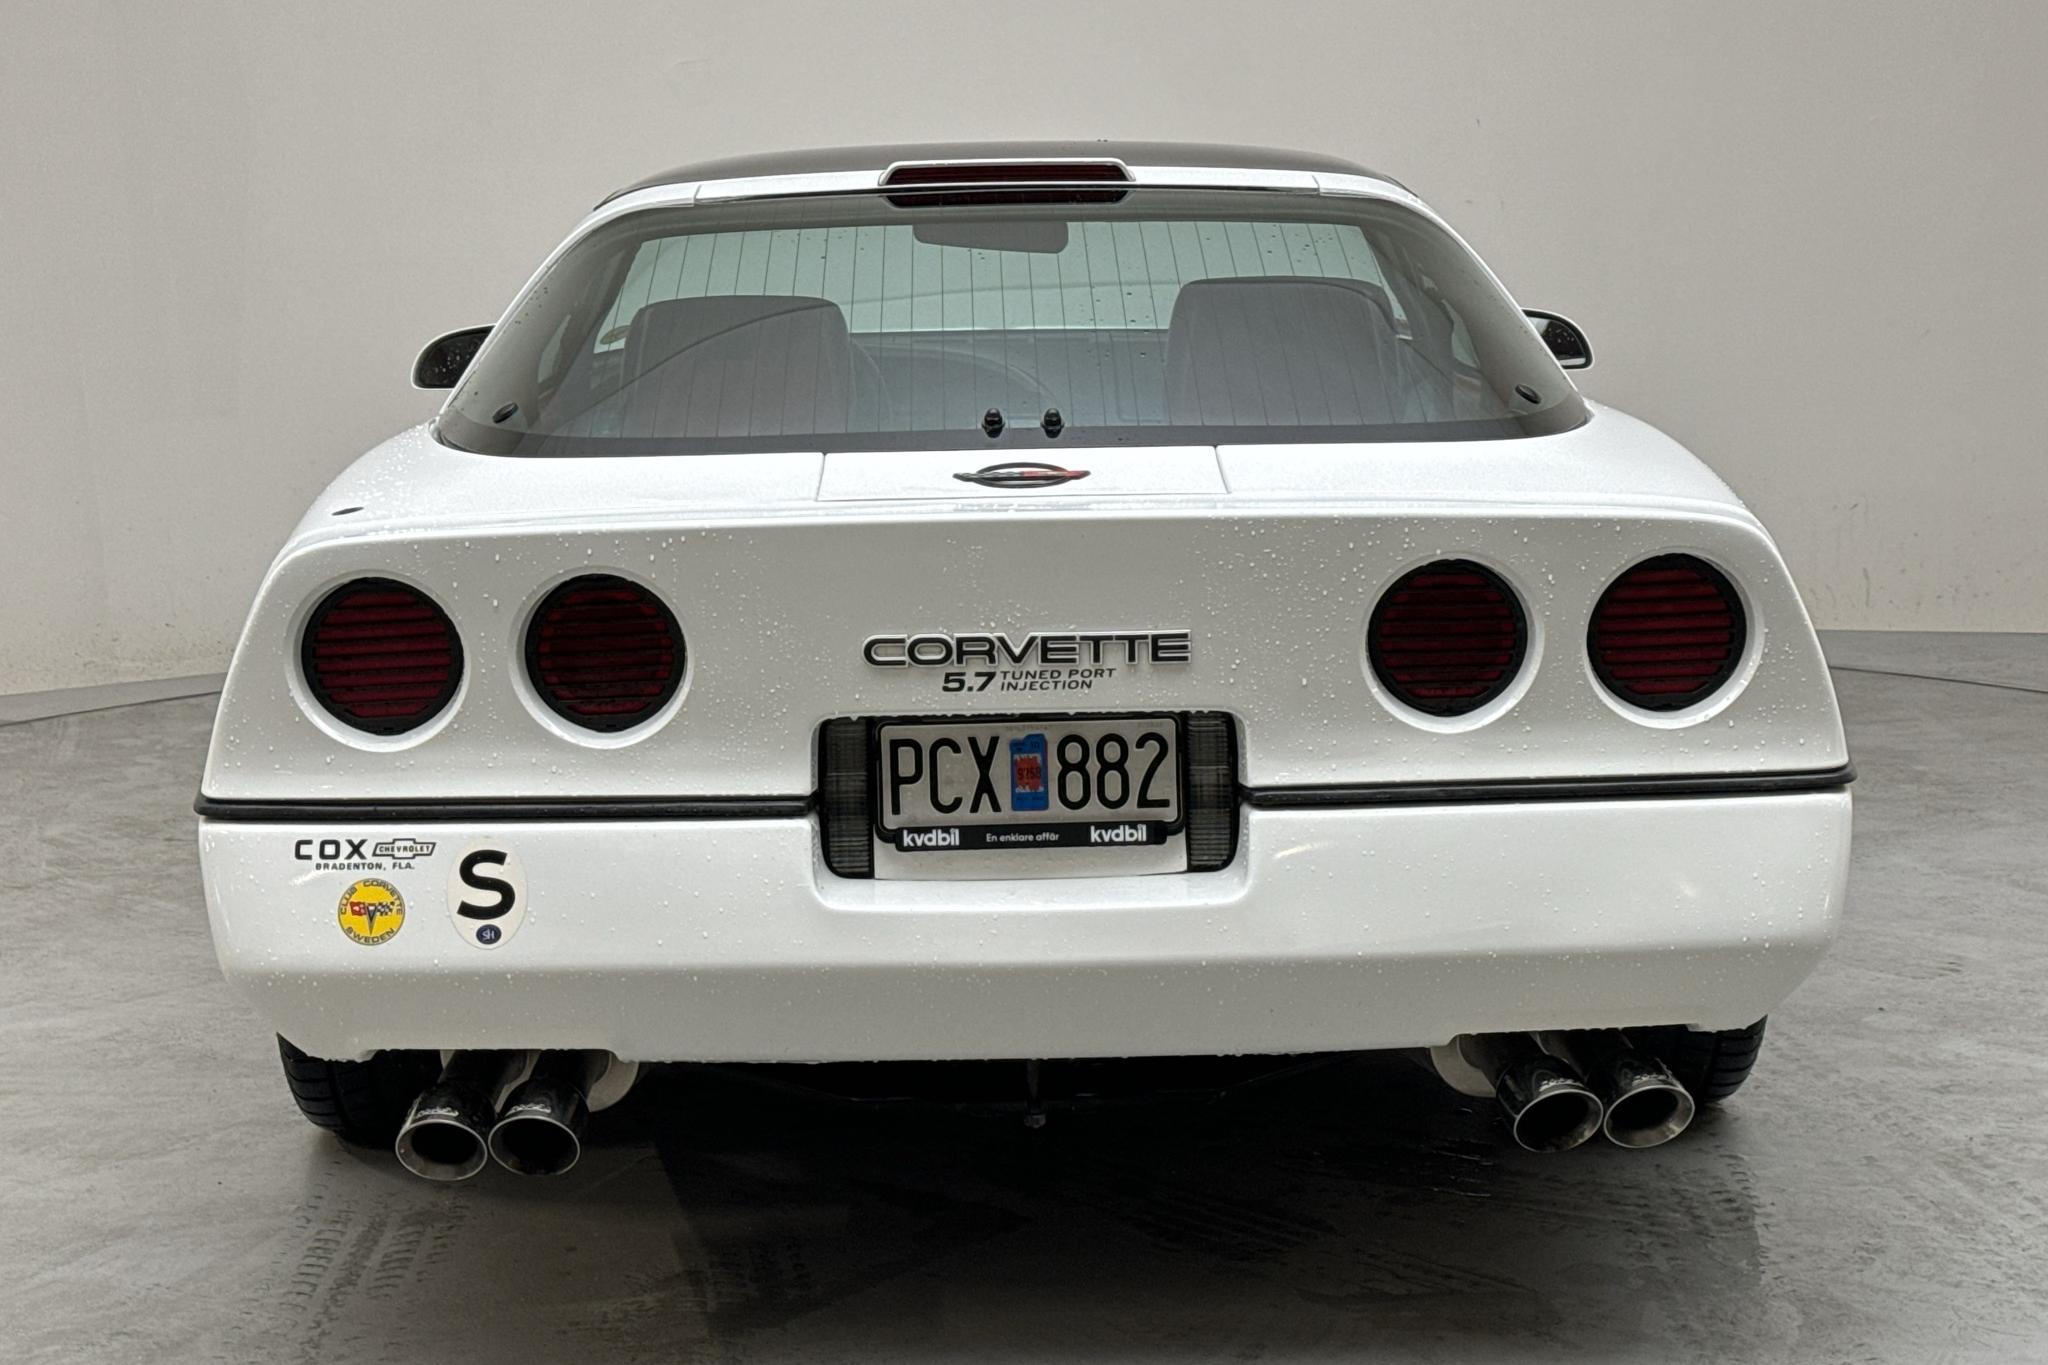 Chevrolet Corvette 5.7 TPI, C4 (249hk) - 33 630 km - Automaattinen - valkoinen - 1990